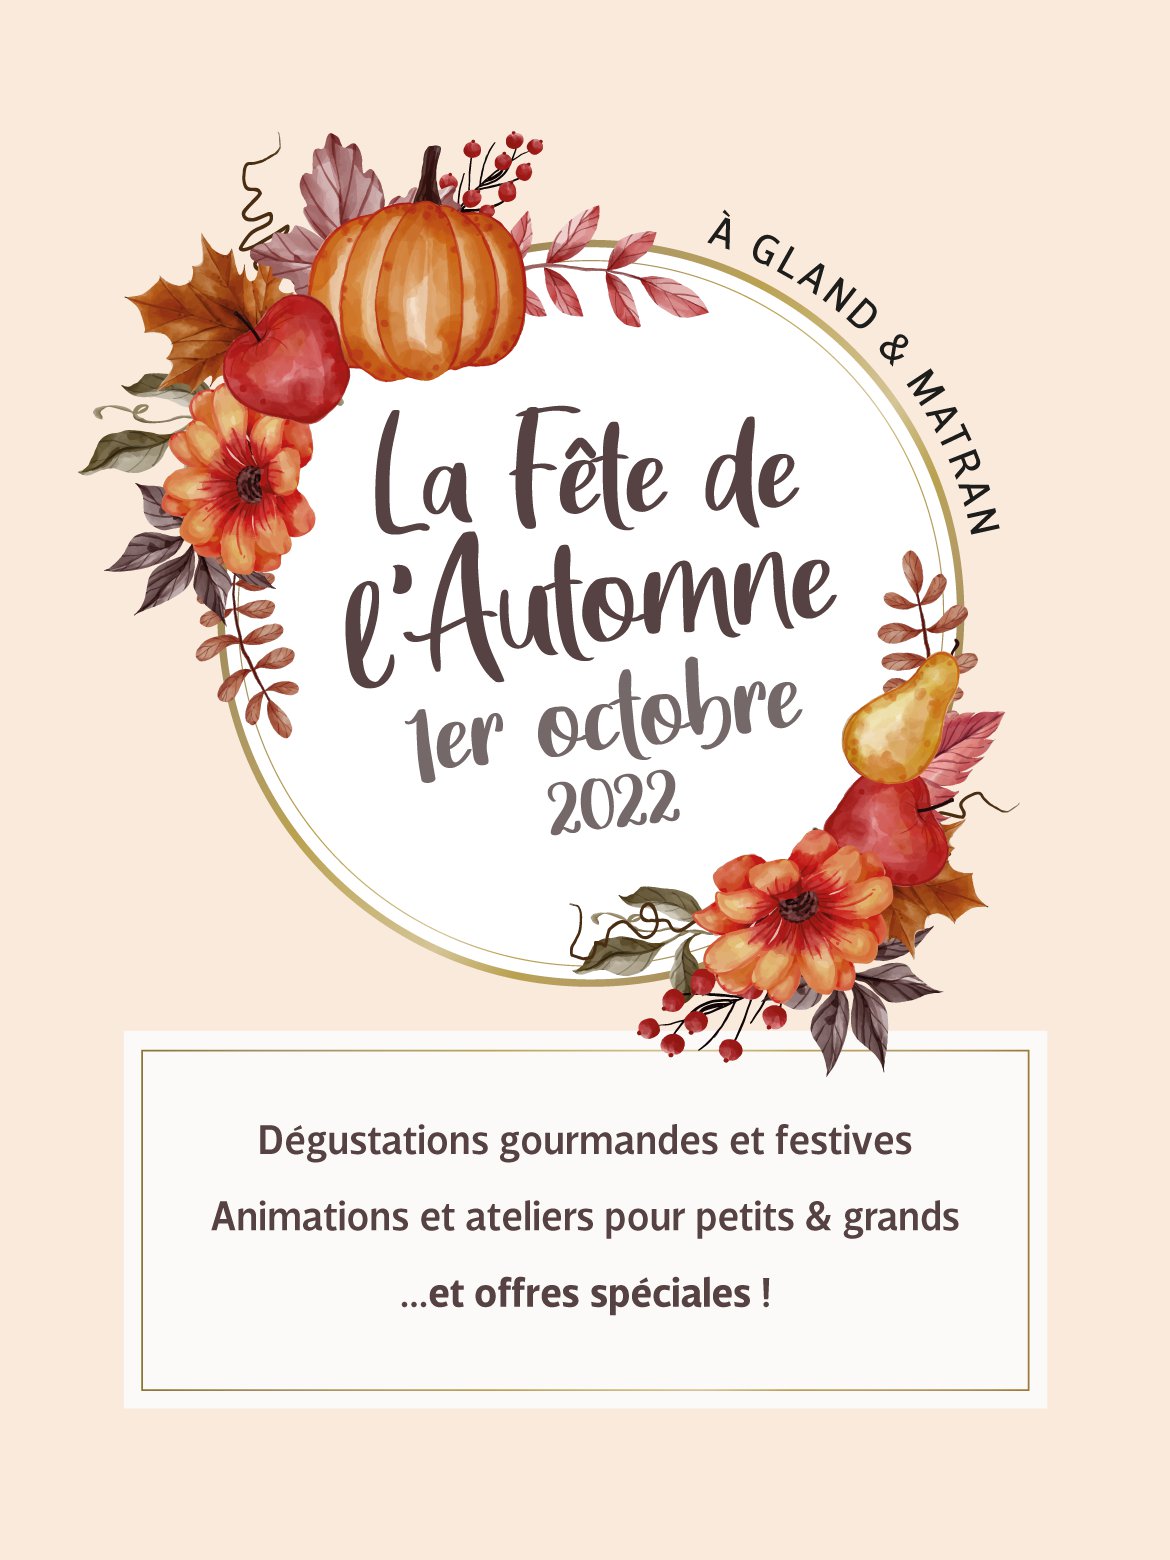 Fête de l'automne - 1er octobre à Gland et Matran - Schilliger